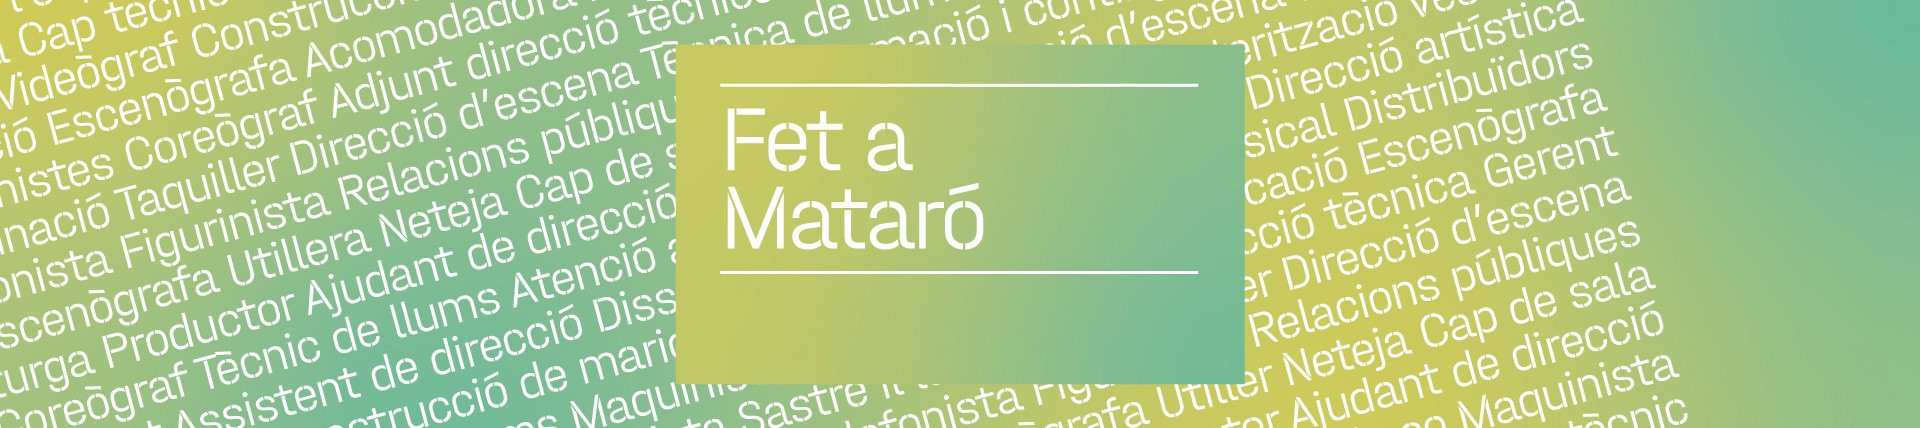 Imatge gràfica del cicle Fet a Mataró